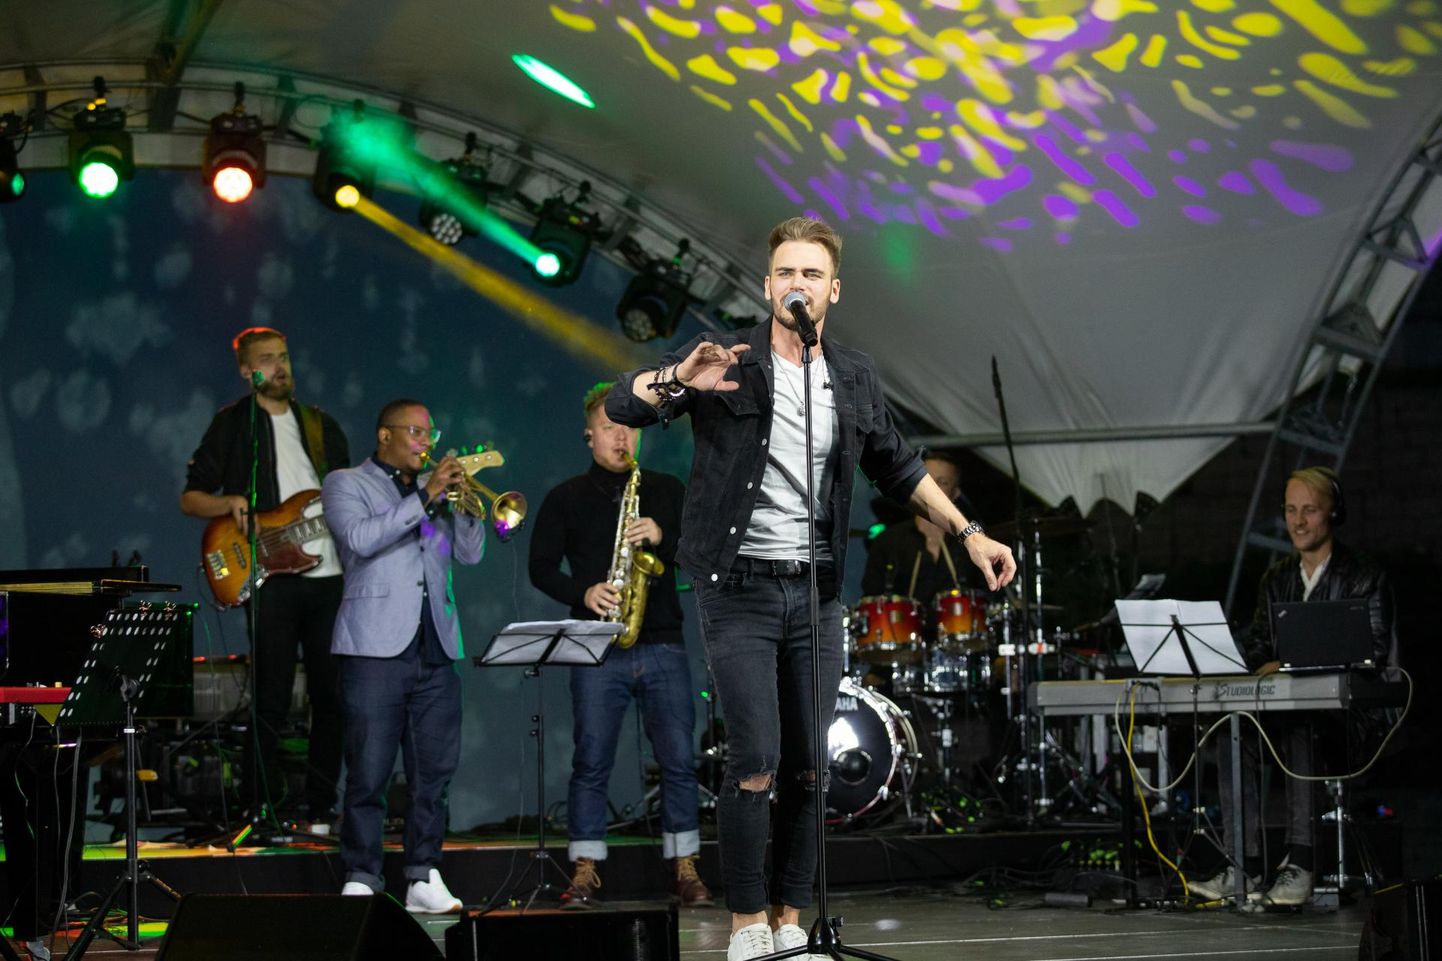 Eesti Laulu võitja Uku Suviste ja teised Rakveres augustikuus esinenud artistid ei jää kokku lepitud tasuta, lubas kontserdikorraldaja Artur Rauhiainen.